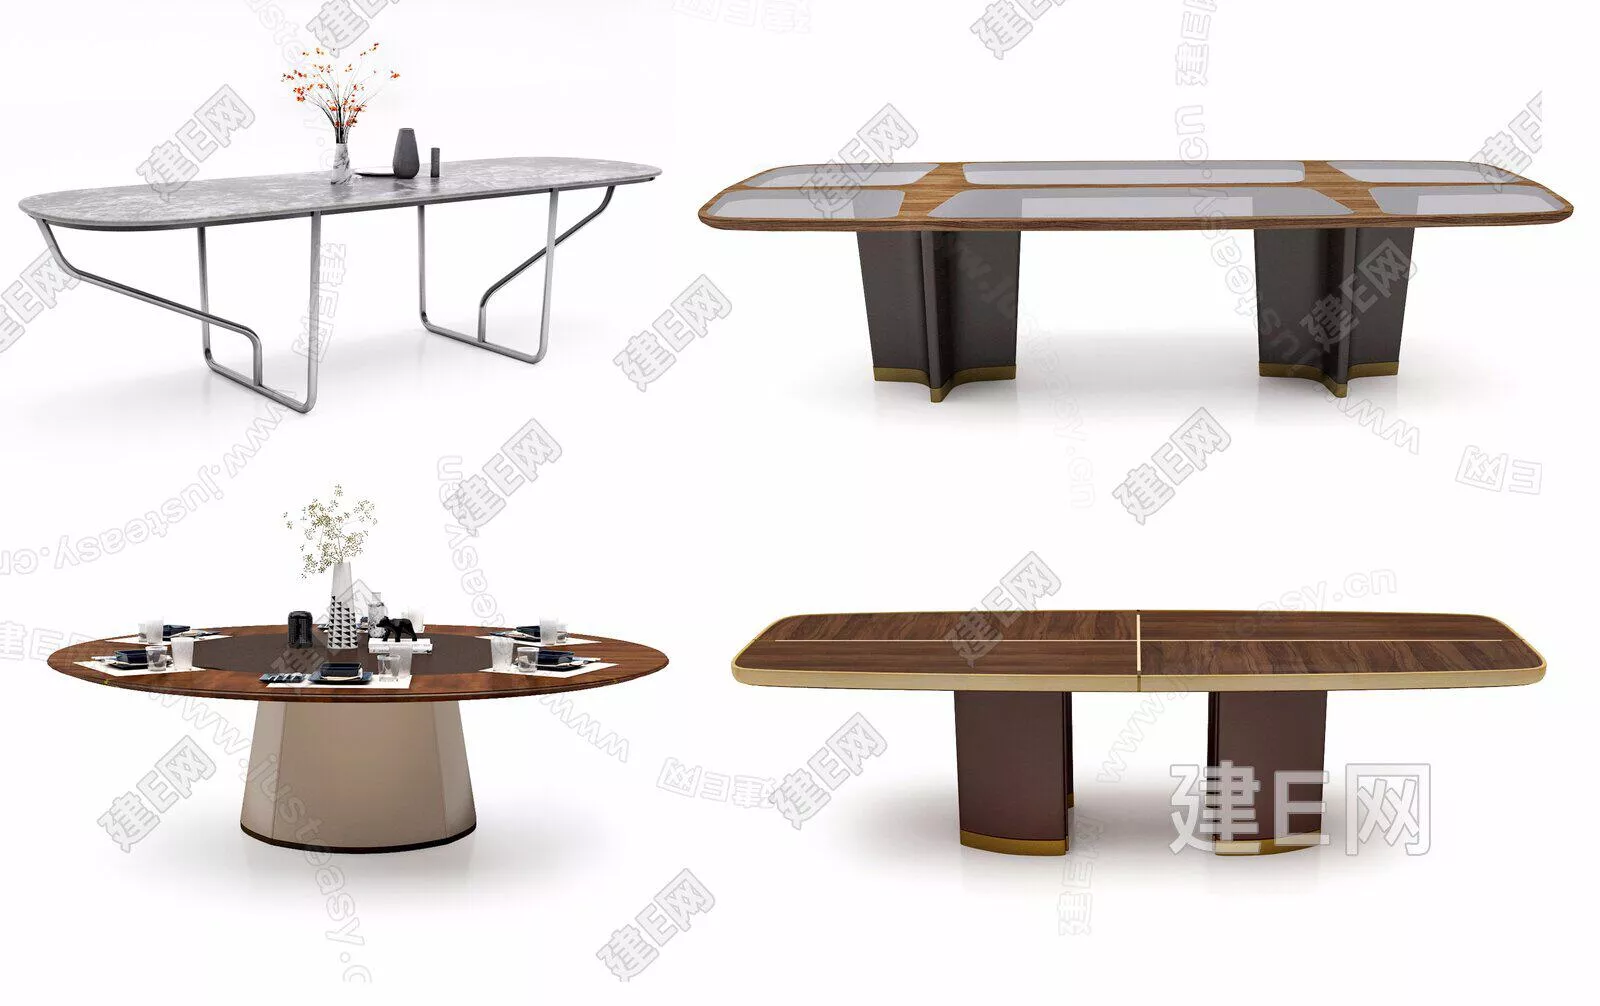 MODERN DINING TABLE SET - SKETCHUP 3D MODEL - ENSCAPE - 111889713